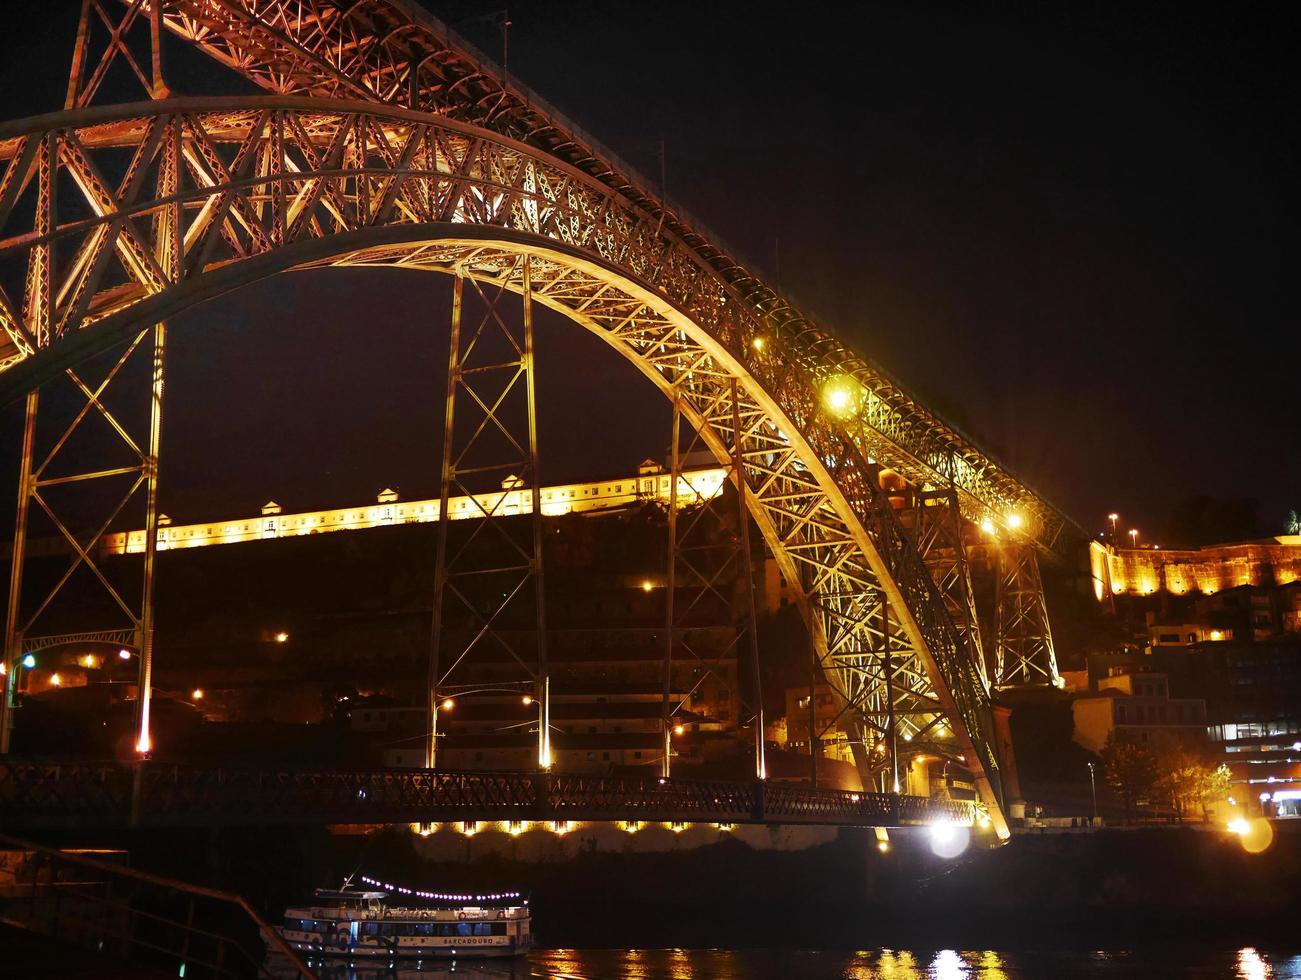 nachtlichten schieten foto van luis een ijzeren brug porto portugal